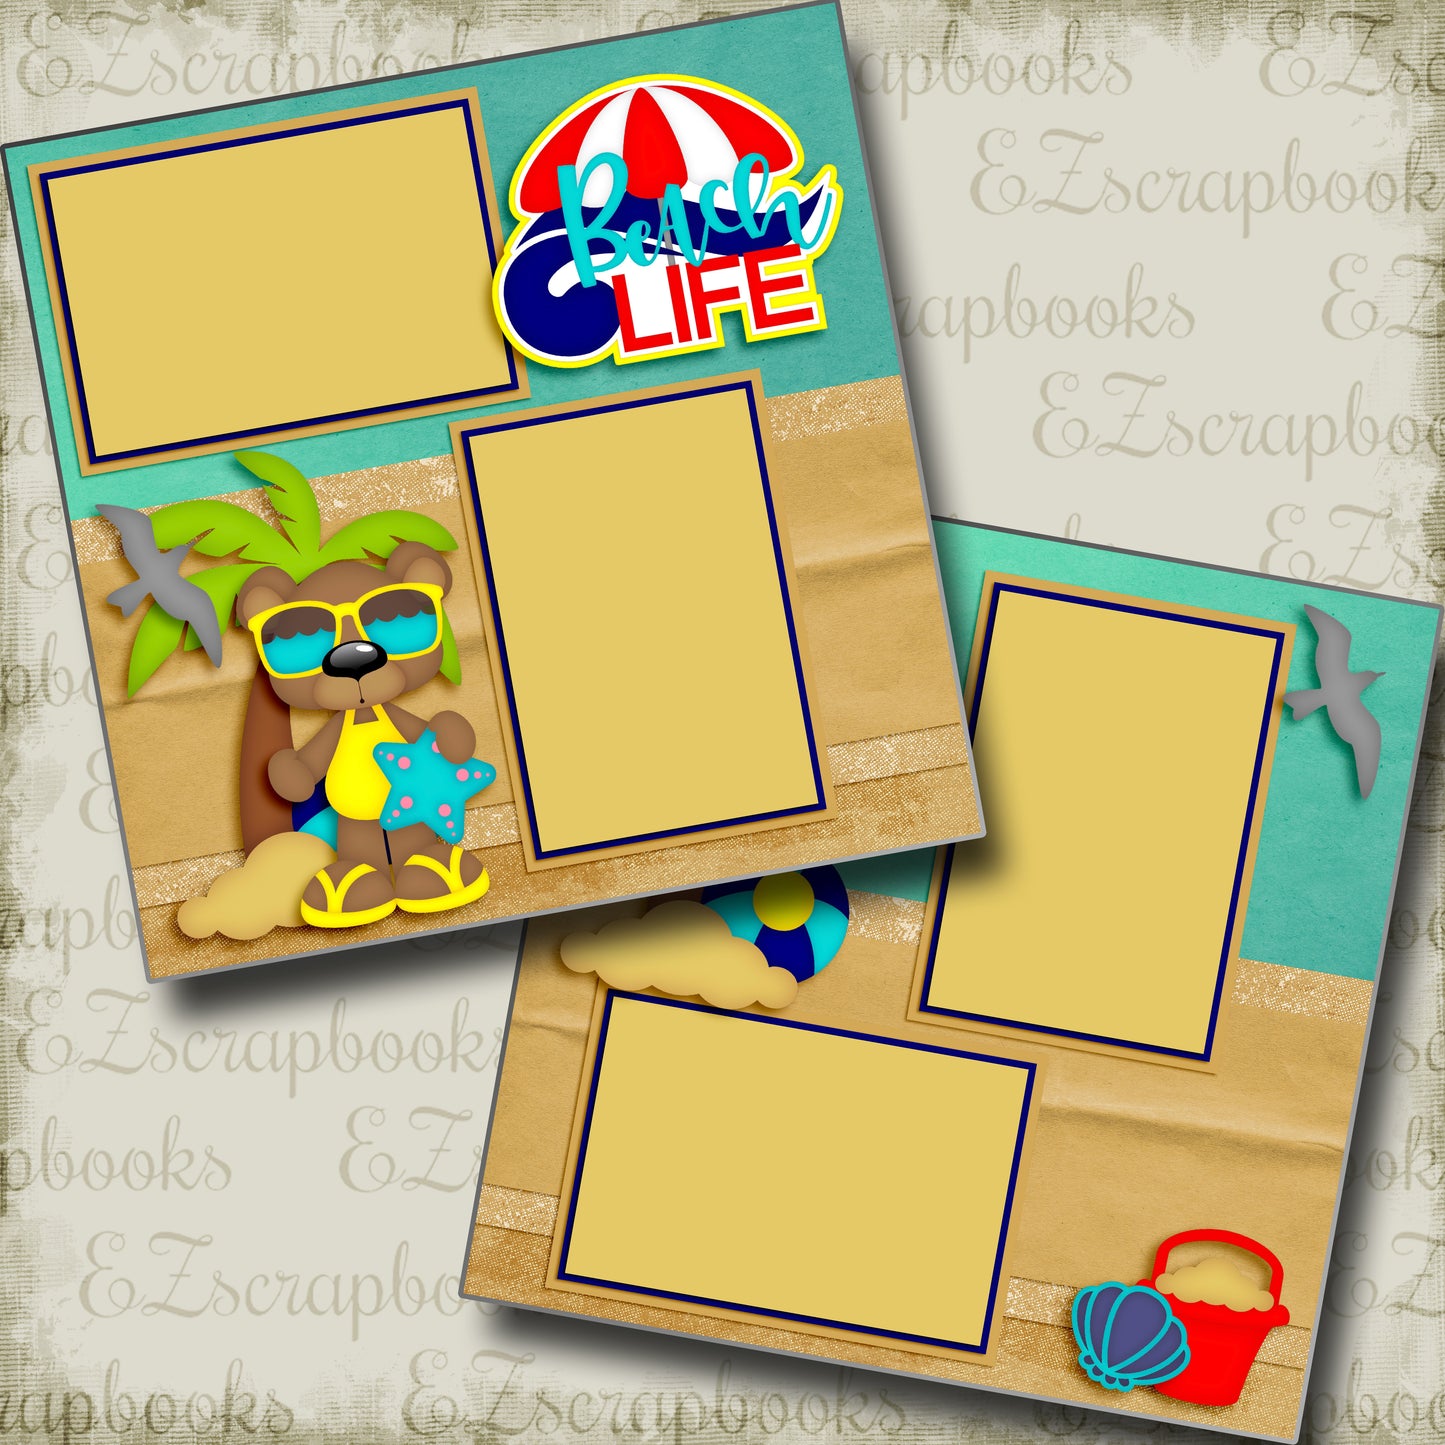 Beach Life - 4930 - EZscrapbooks Scrapbook Layouts Beach - Tropical